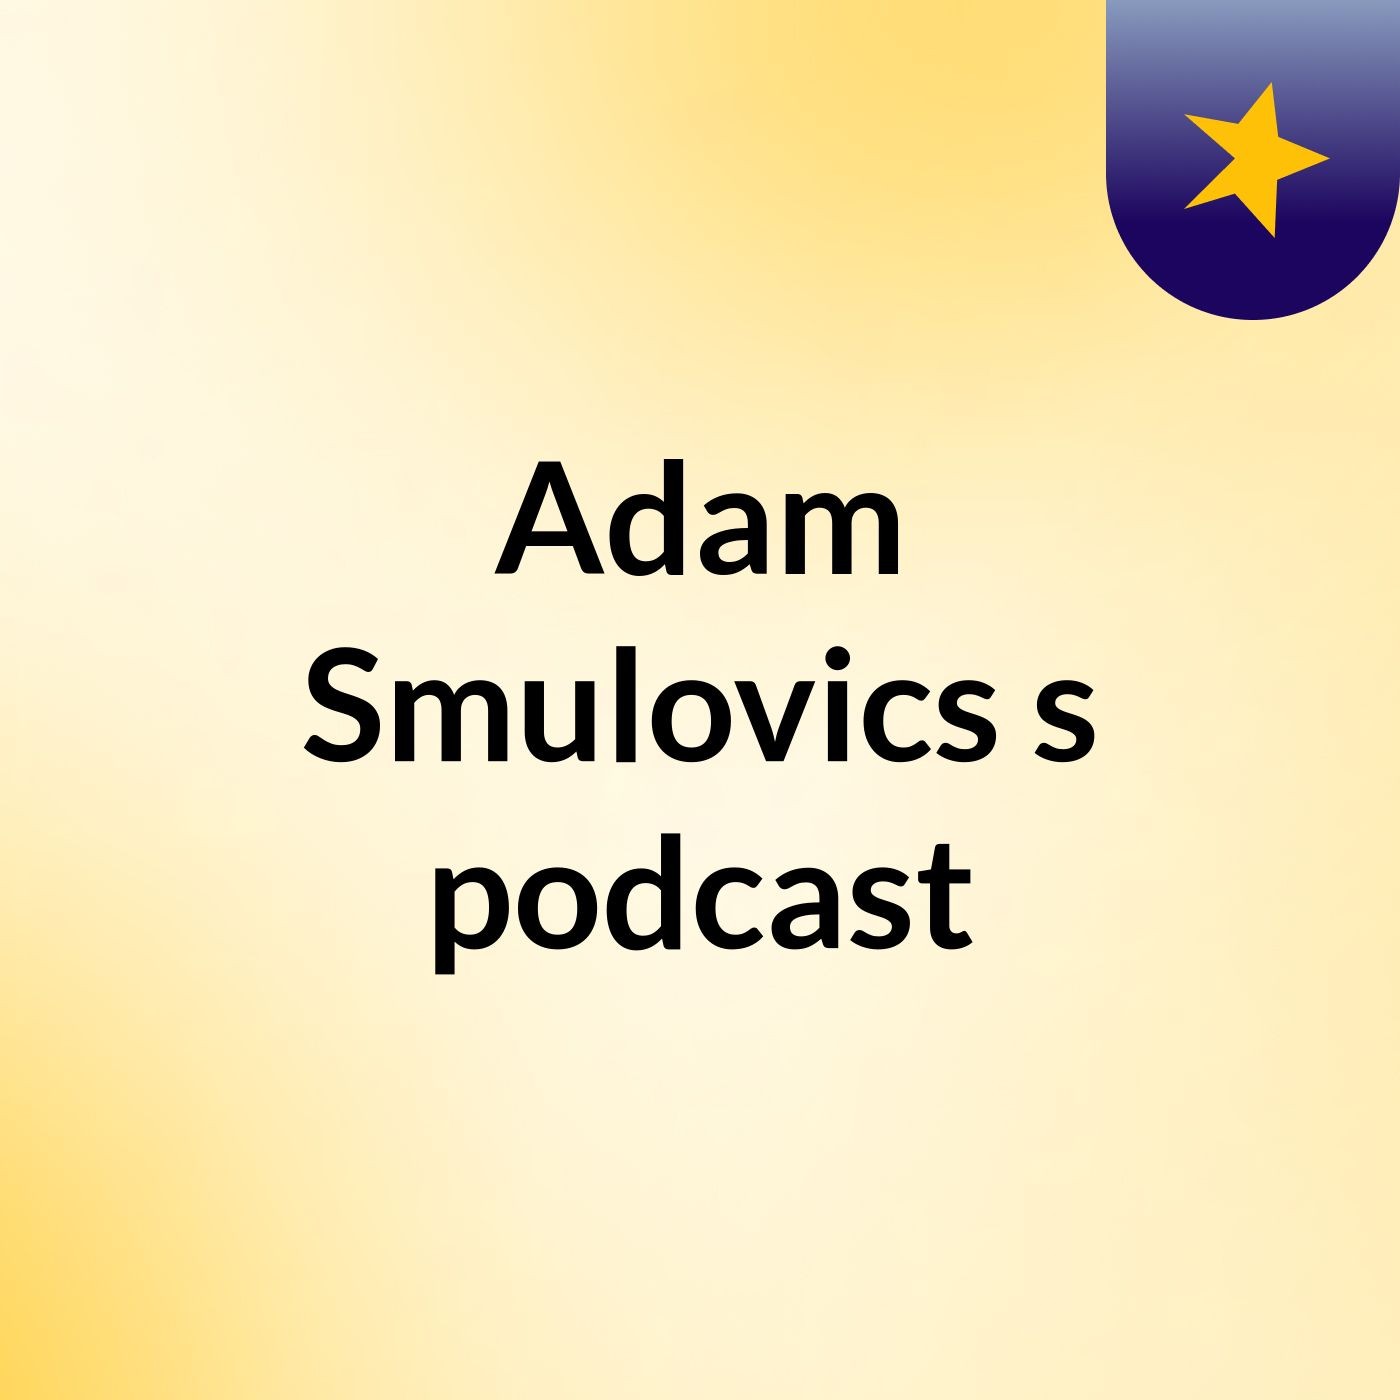 Adam Smulovics's podcast